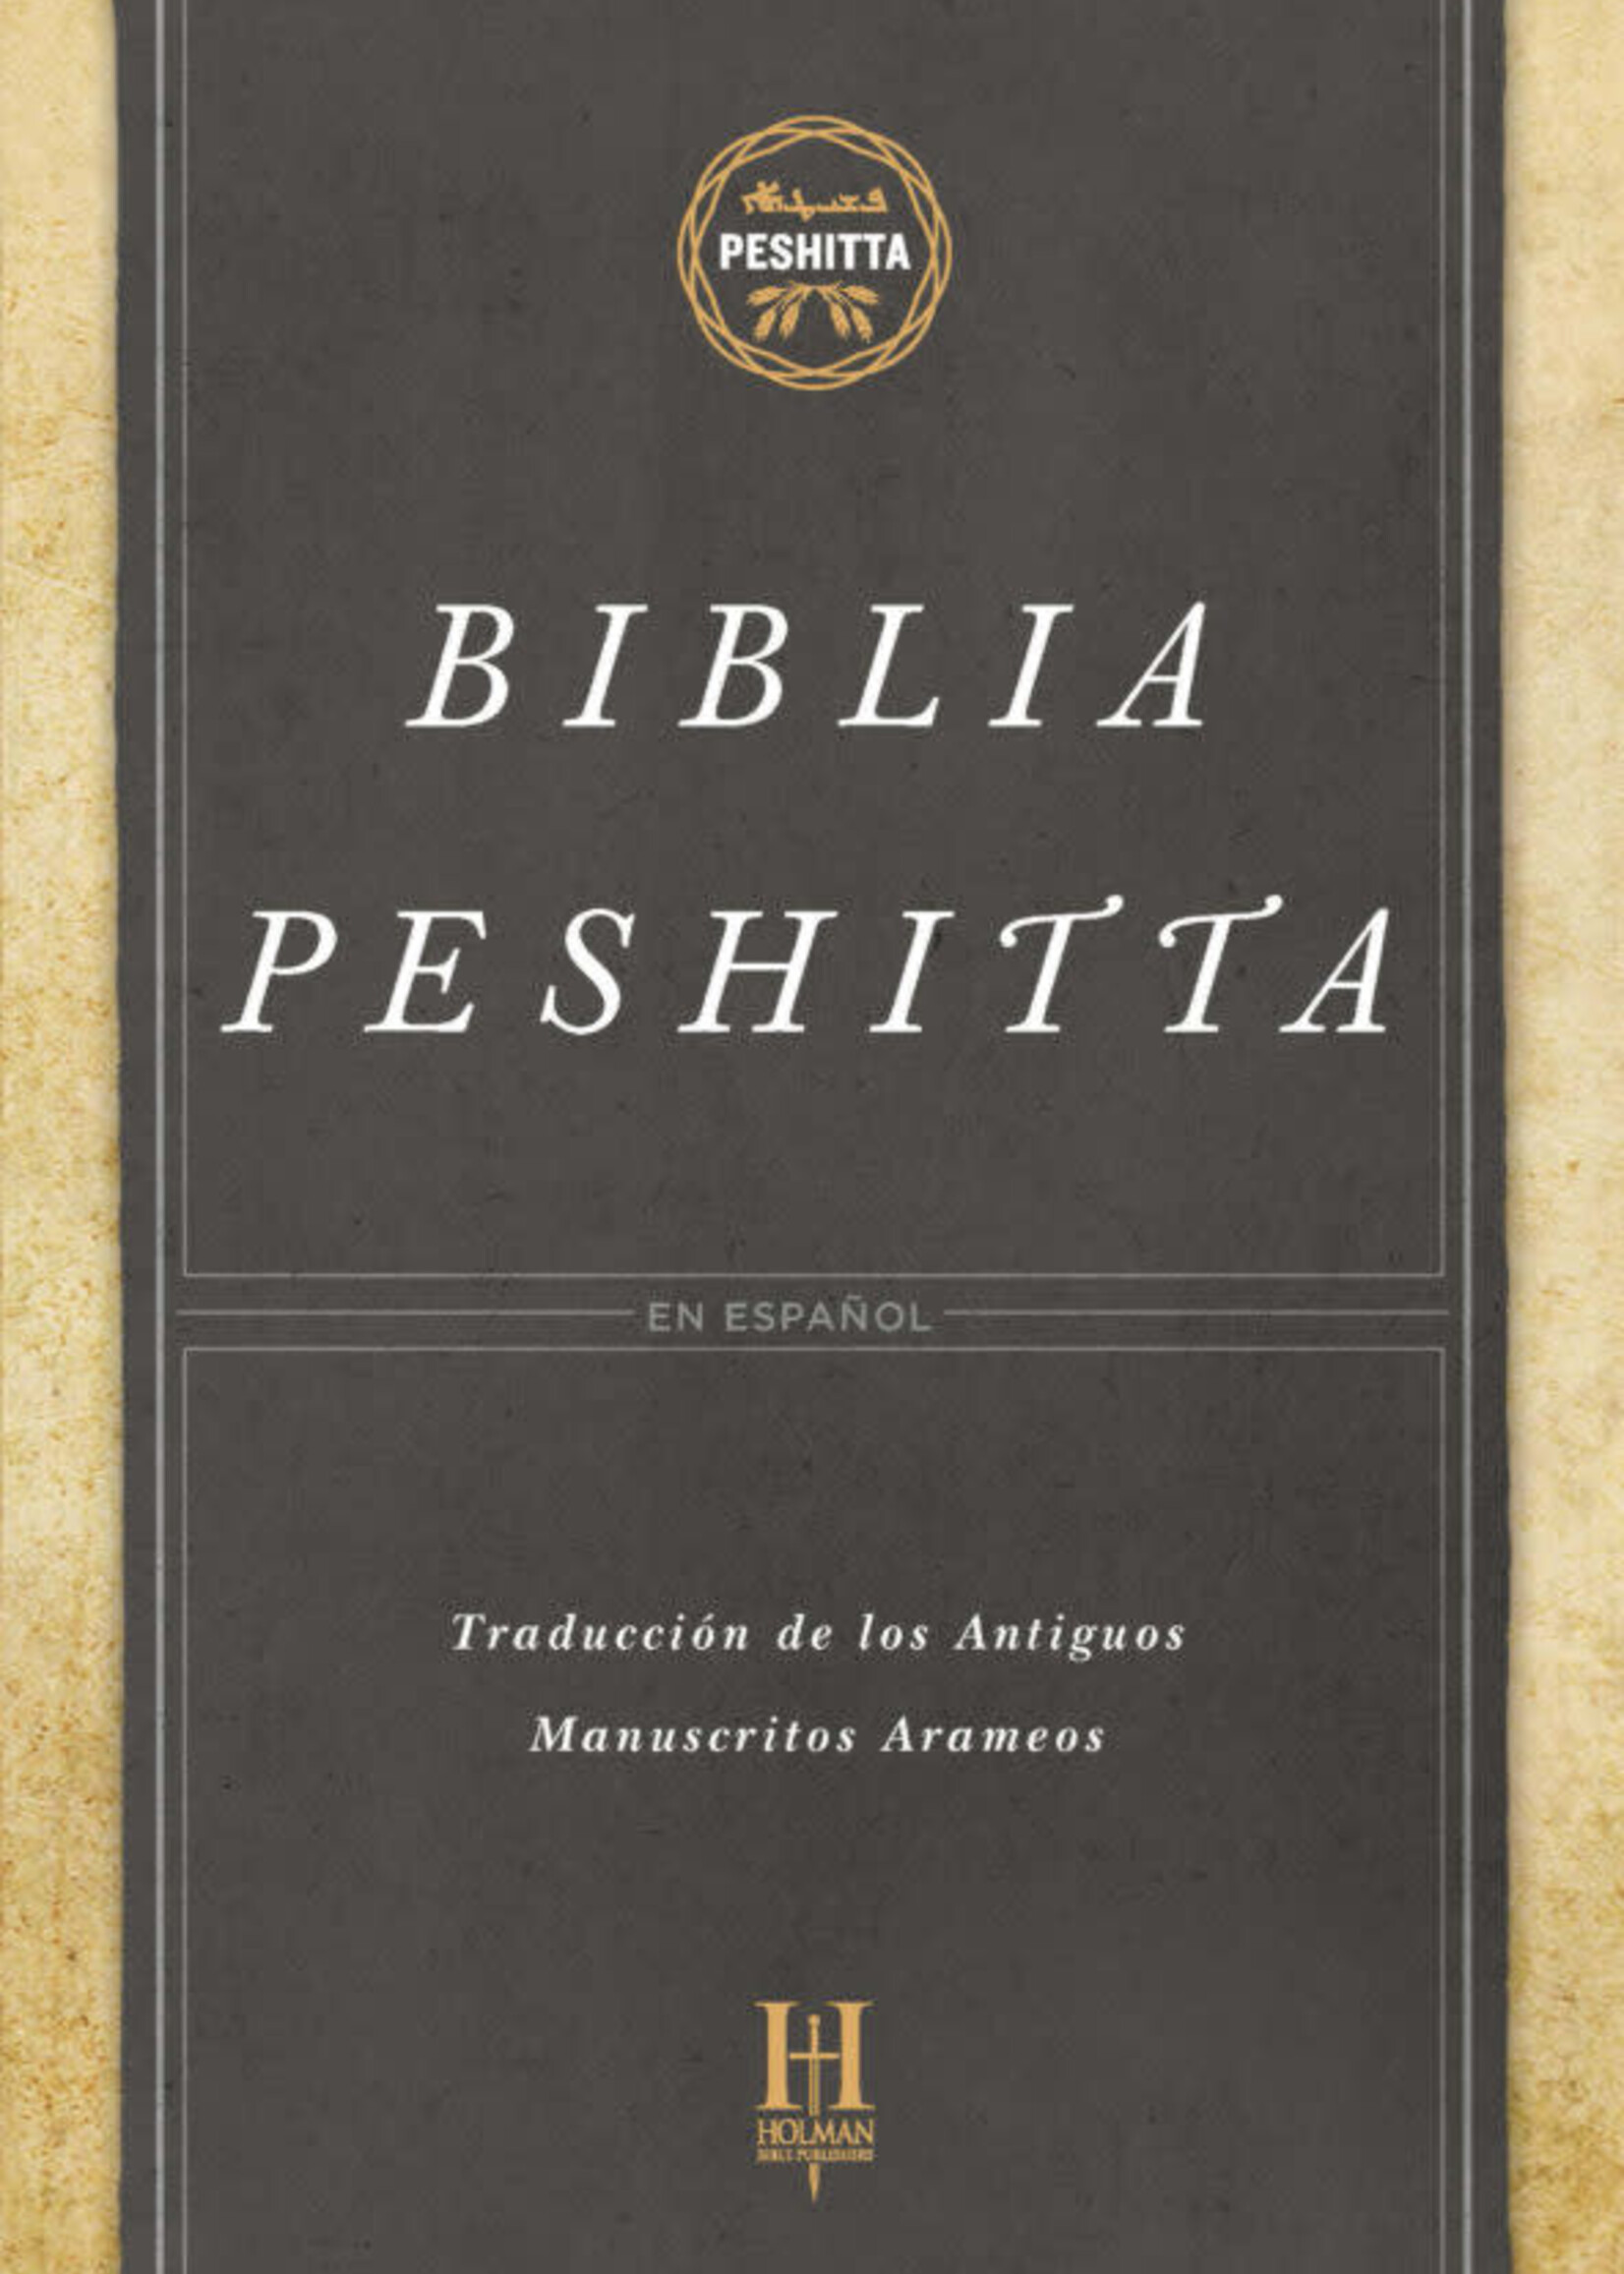 HOLMAN EN ESPANOL BIBLIA PESHITTA PASTA DURA CON INDICADORES